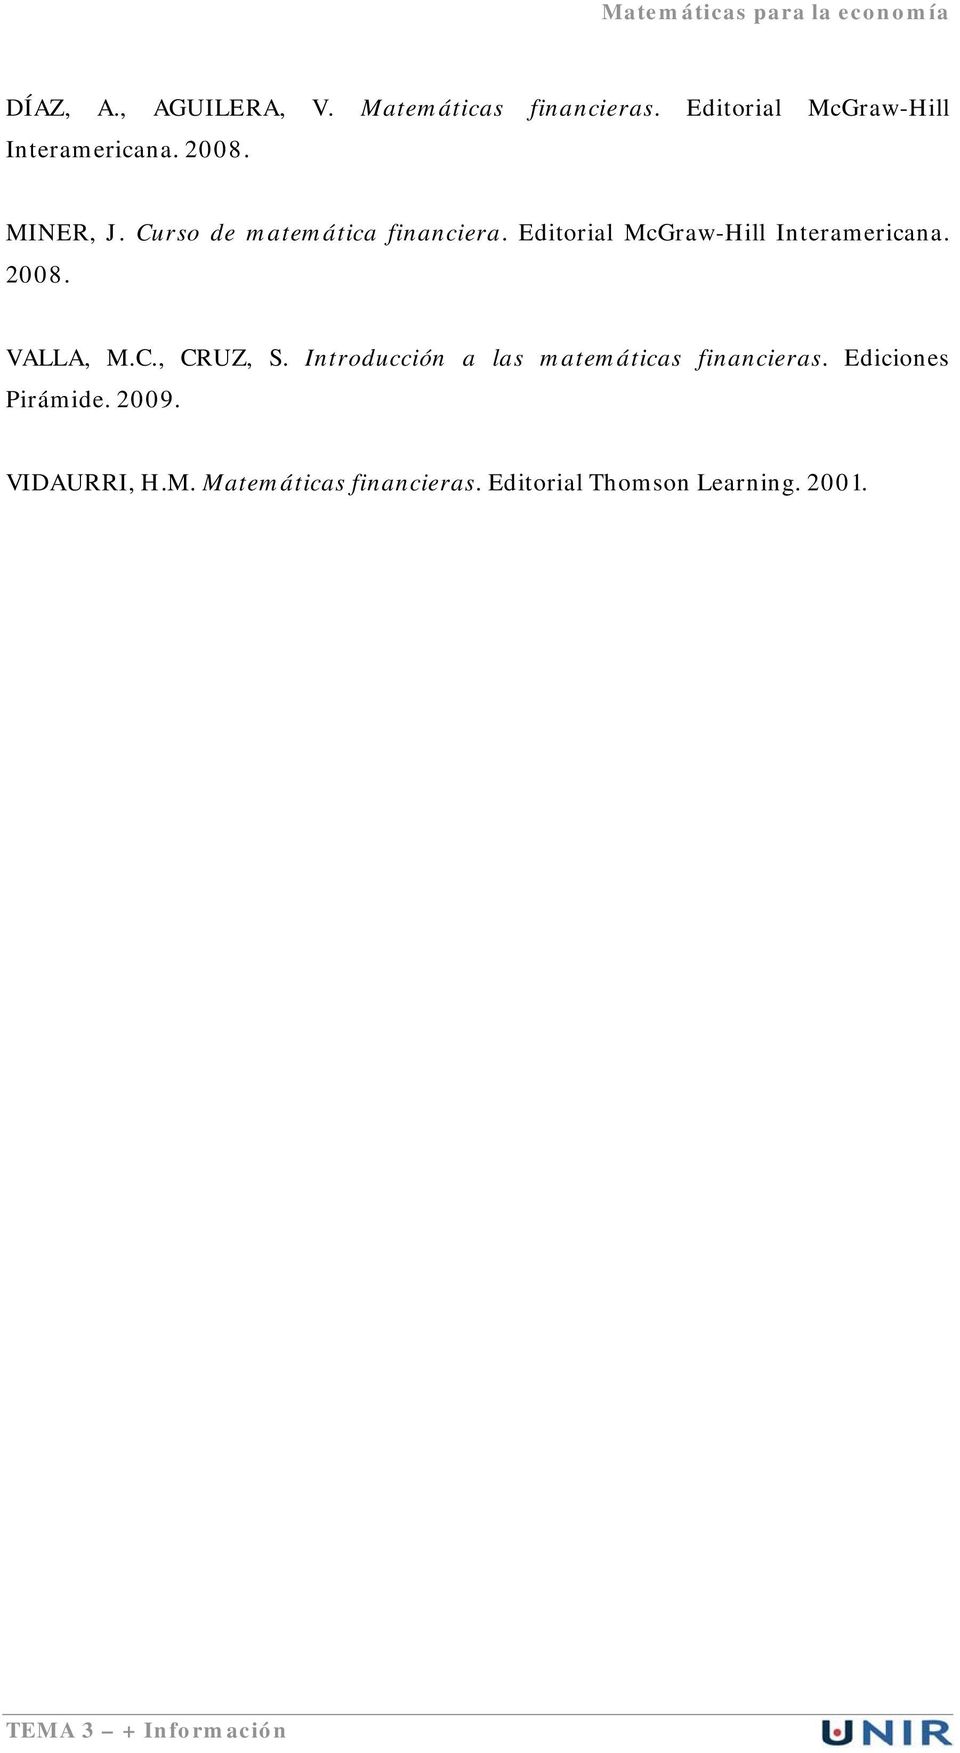 VALLA, M.C., CRUZ, S. Introducción a las matemáticas financieras. Ediciones Pirámide. 2009.